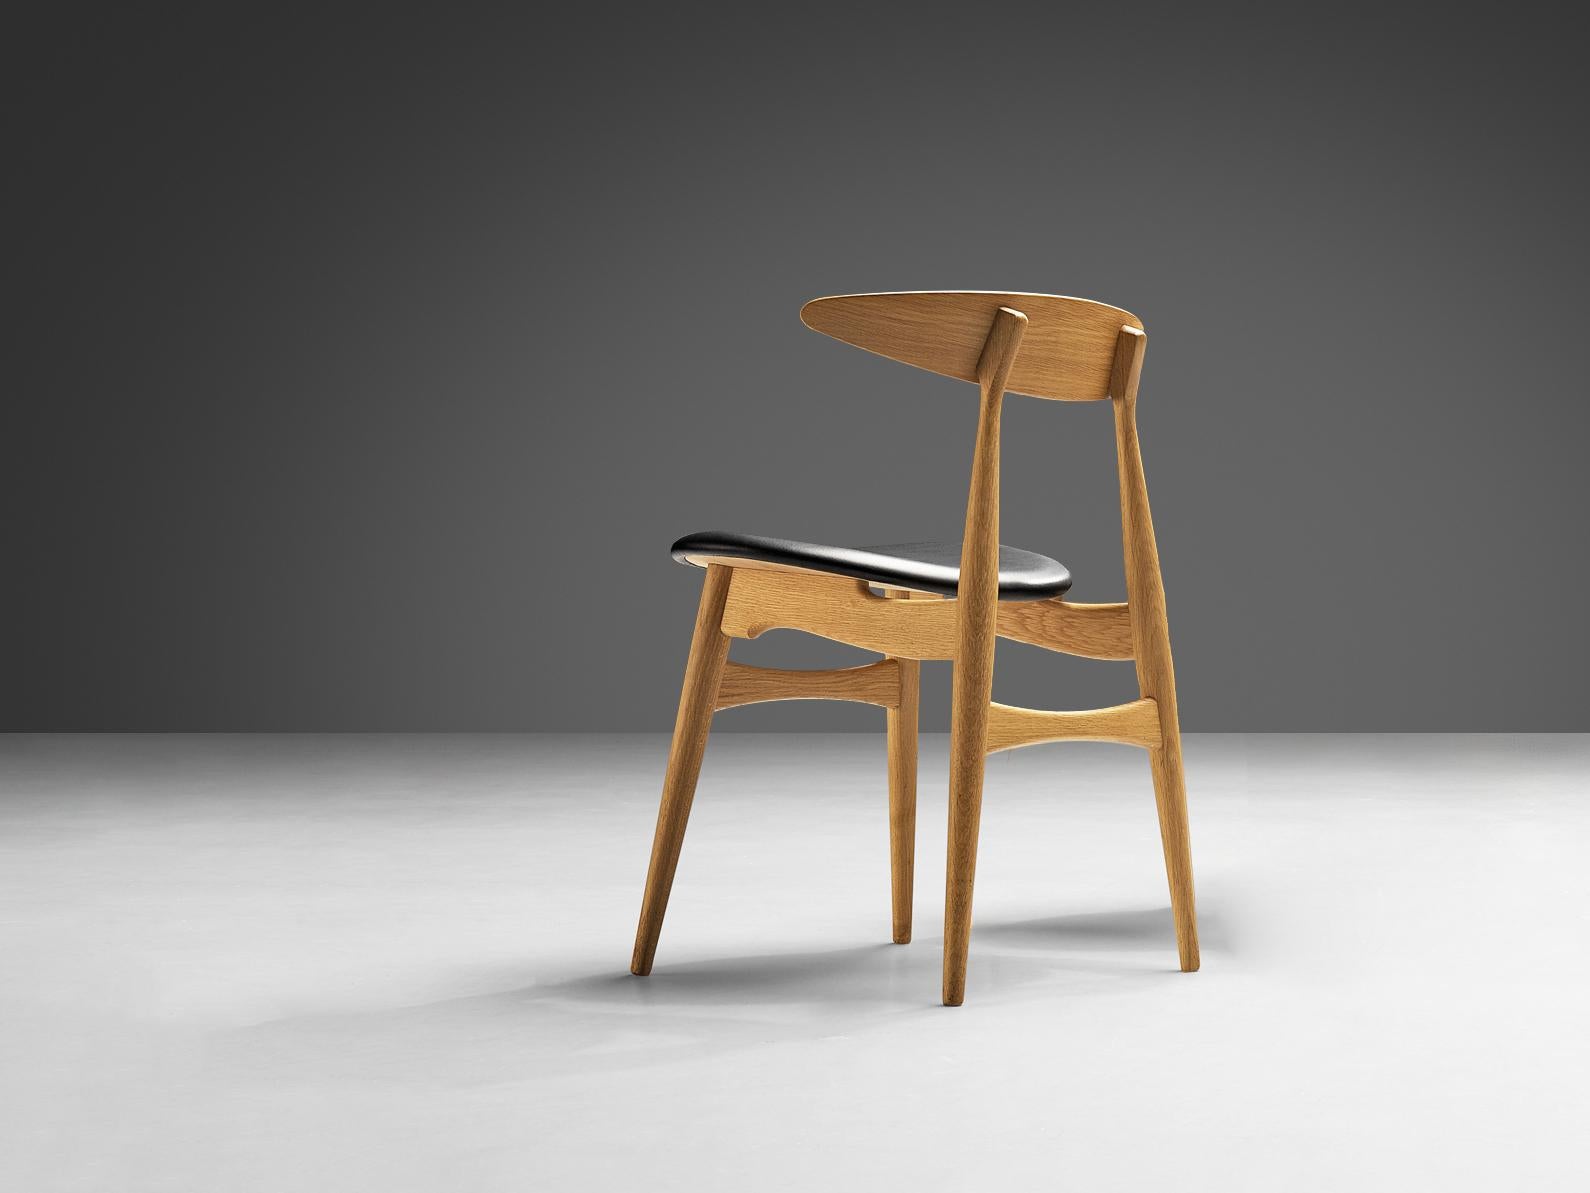 Hans J. Wegner pour Carl Hansen & Søn, chaise de salle à manger, modèle 'CH 33', chêne, cuir, Danemark, design 1954, production ultérieure. 

Chaise de salle à manger conçue par le designer danois Hans J. Wegner. Ces chaises sont recouvertes de cuir